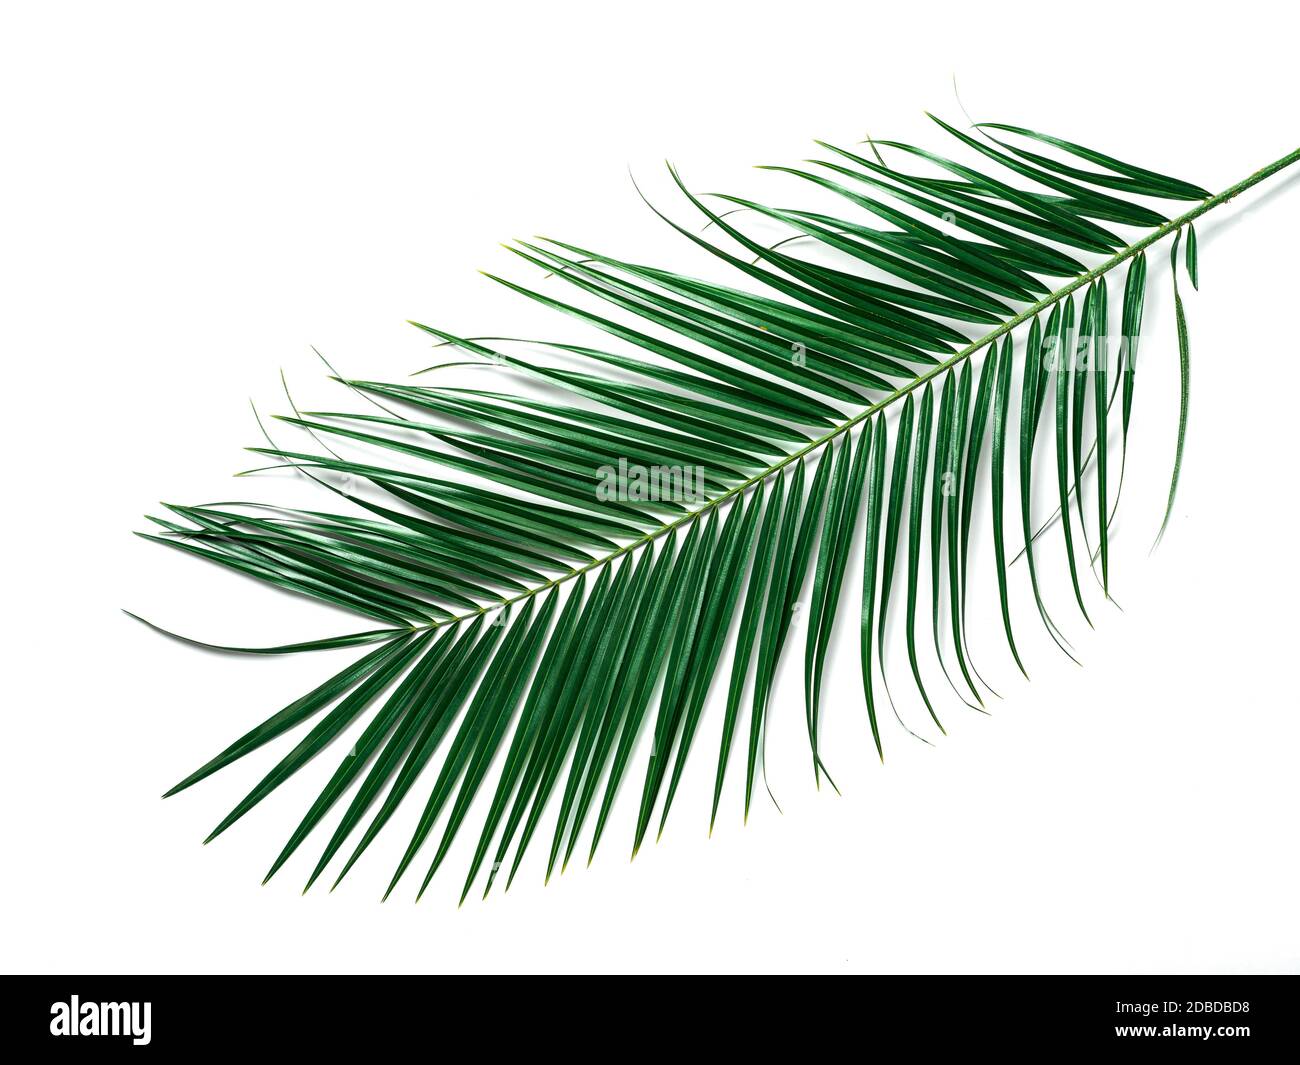 Foglie di palma isolate su sfondo bianco. Vista dall'alto con foglie di  palma tropicali o